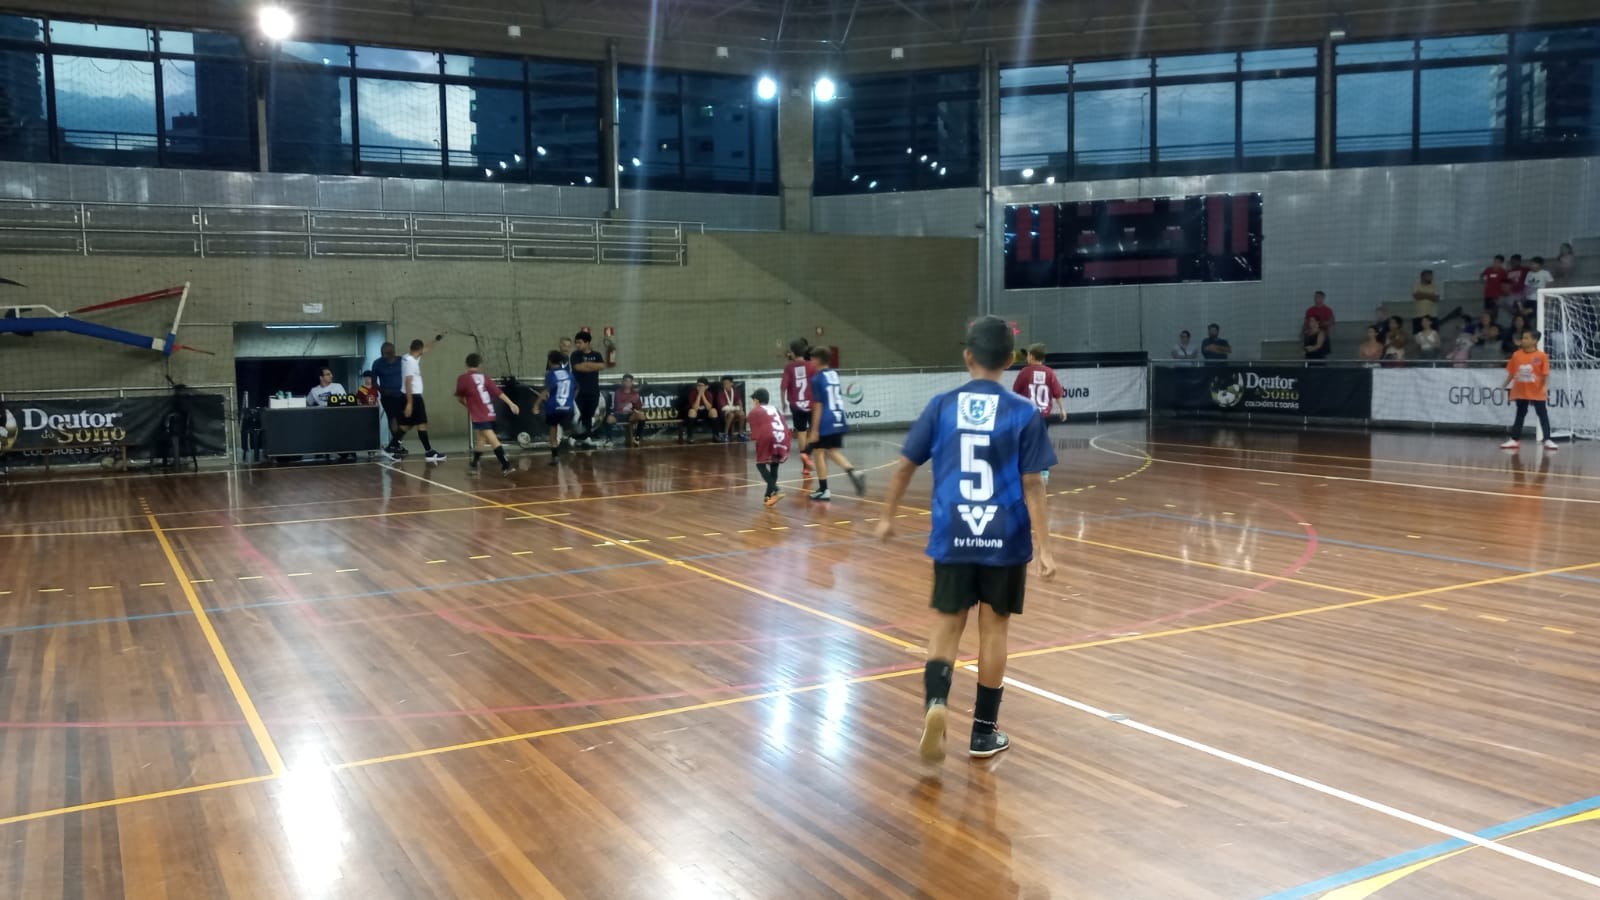 Jean Piaget fica em primeiro no Grupo 3 e pega o Regina Altman na próxima  fase da 19ª Copa TV Tribuna de Futsal, copa tv tribuna de futsal escolar